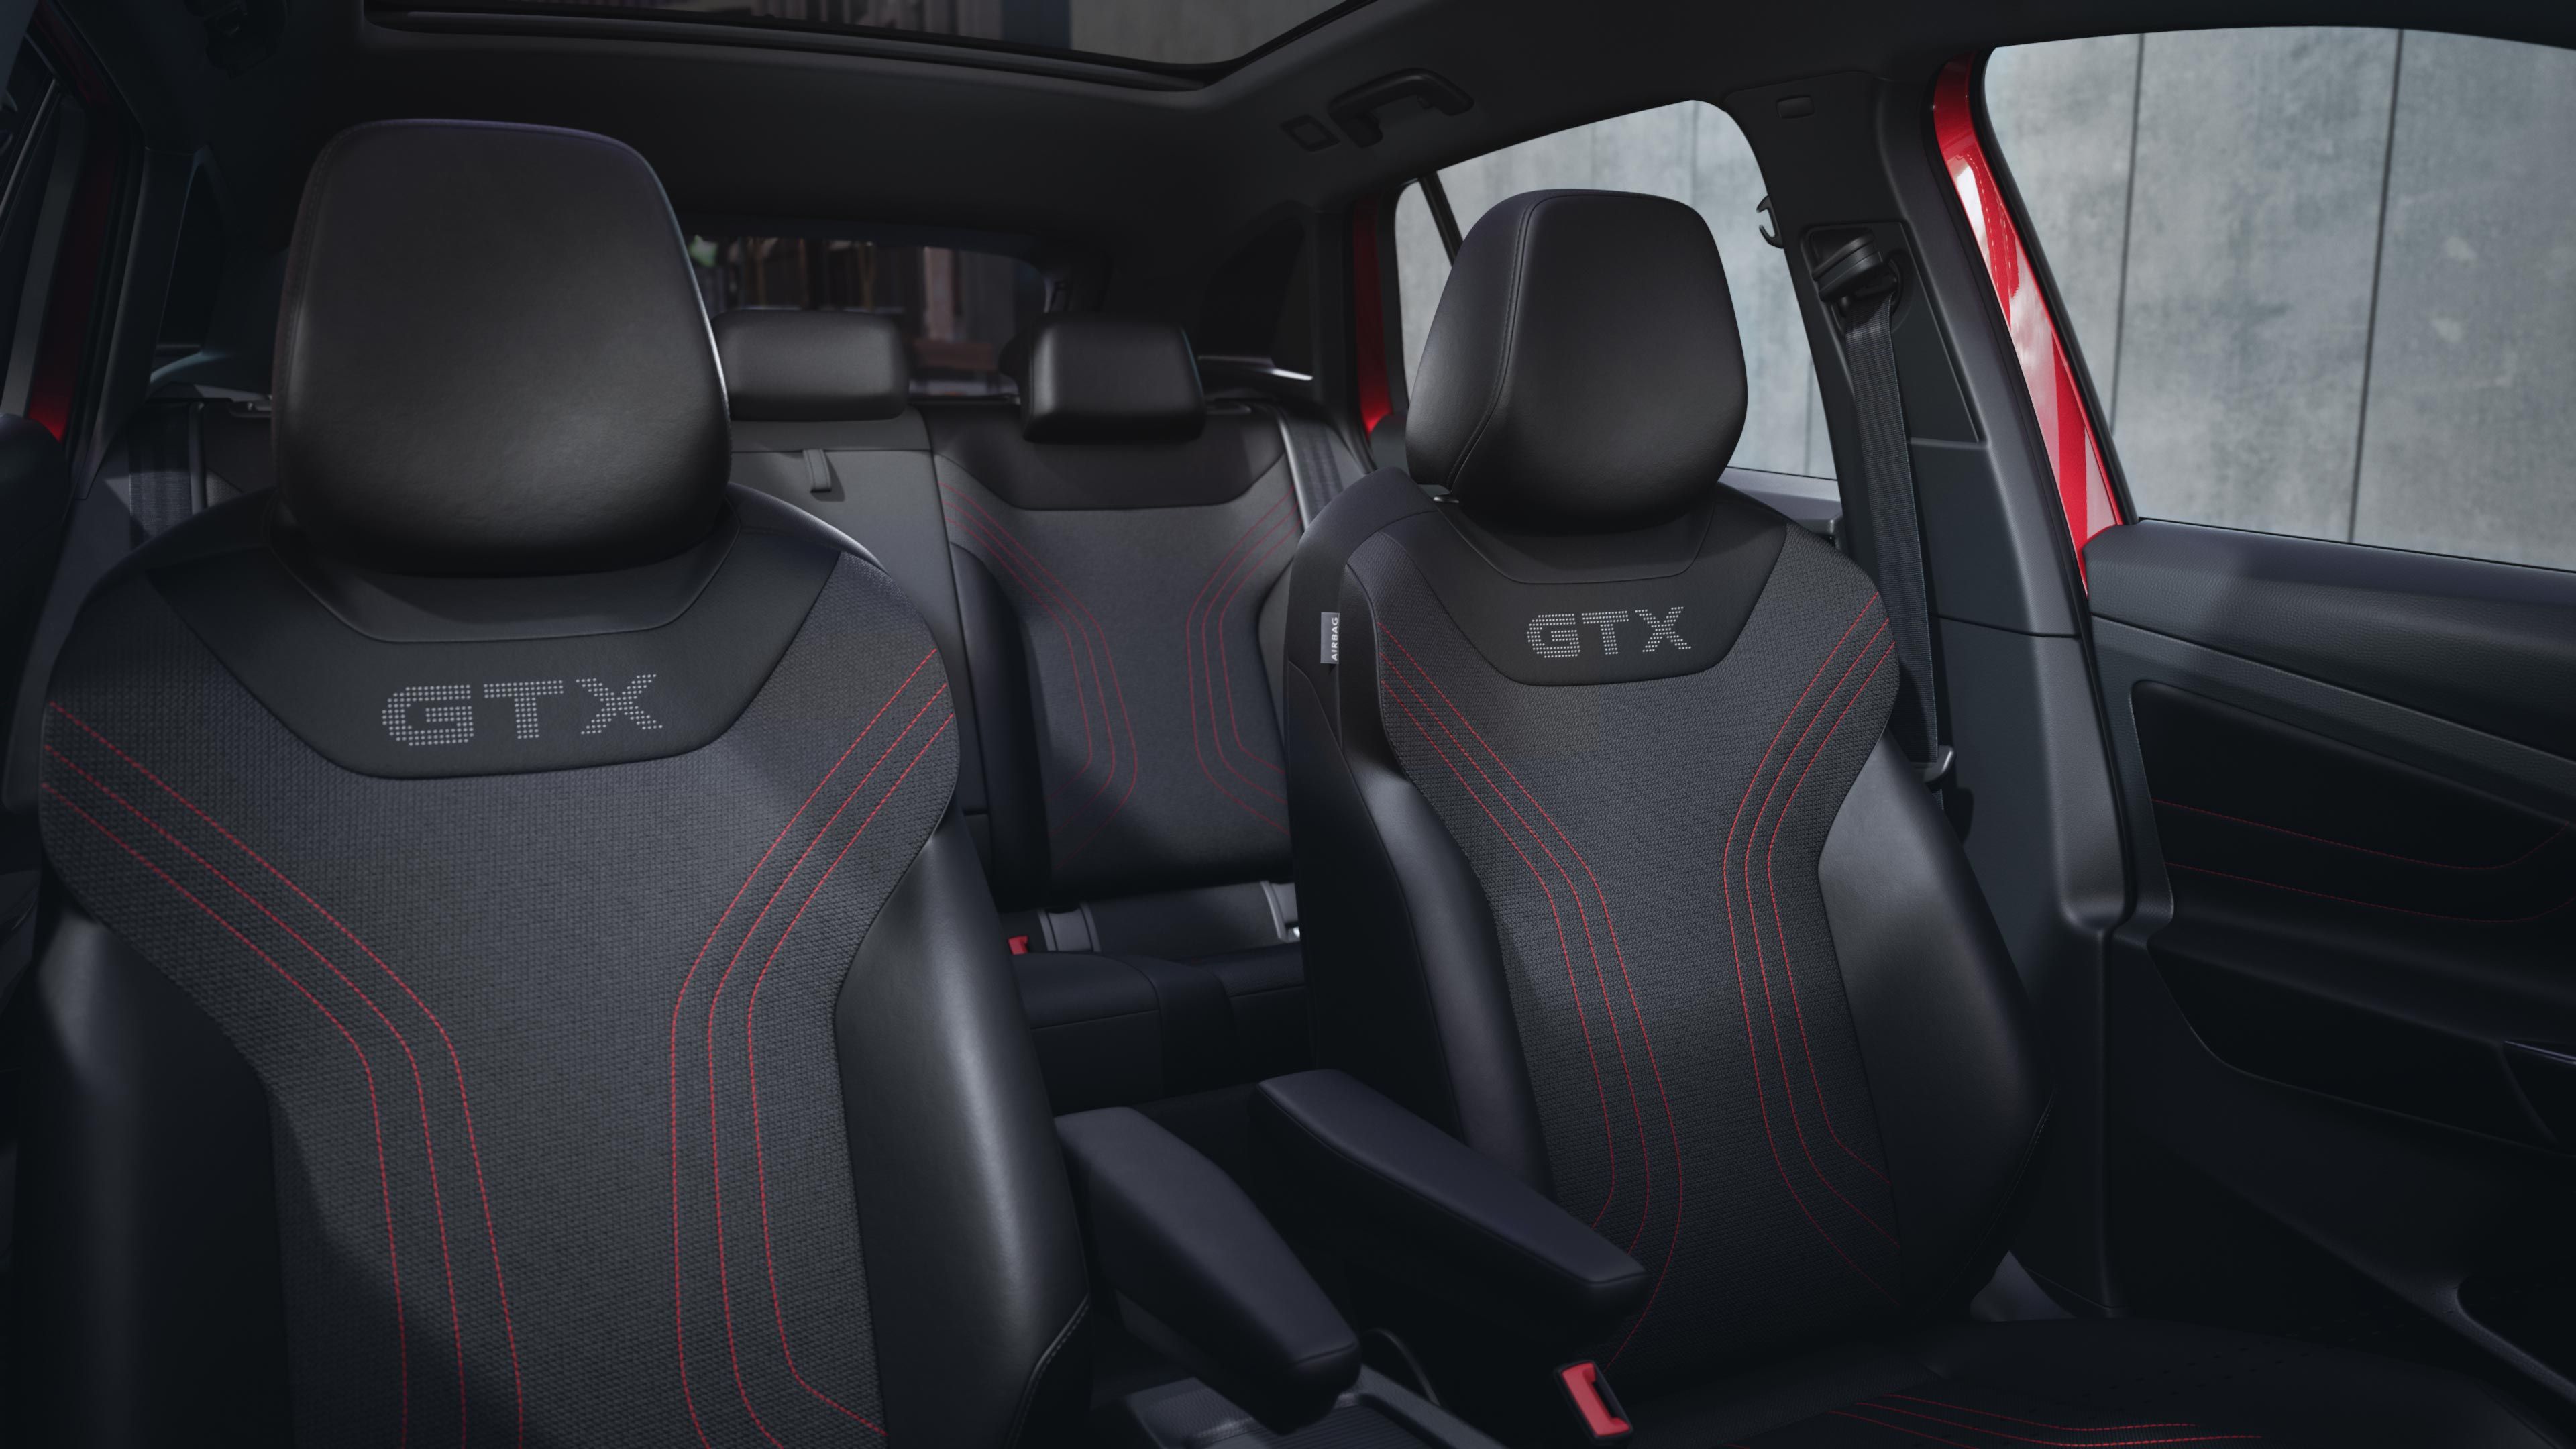 Innenansicht des VW ID.4 GTX von der Mittelkonsole aus. Zu sehen sind die Vordersitze mit GTX-Logo und roten Details sowie ein Teil der Rückbank.